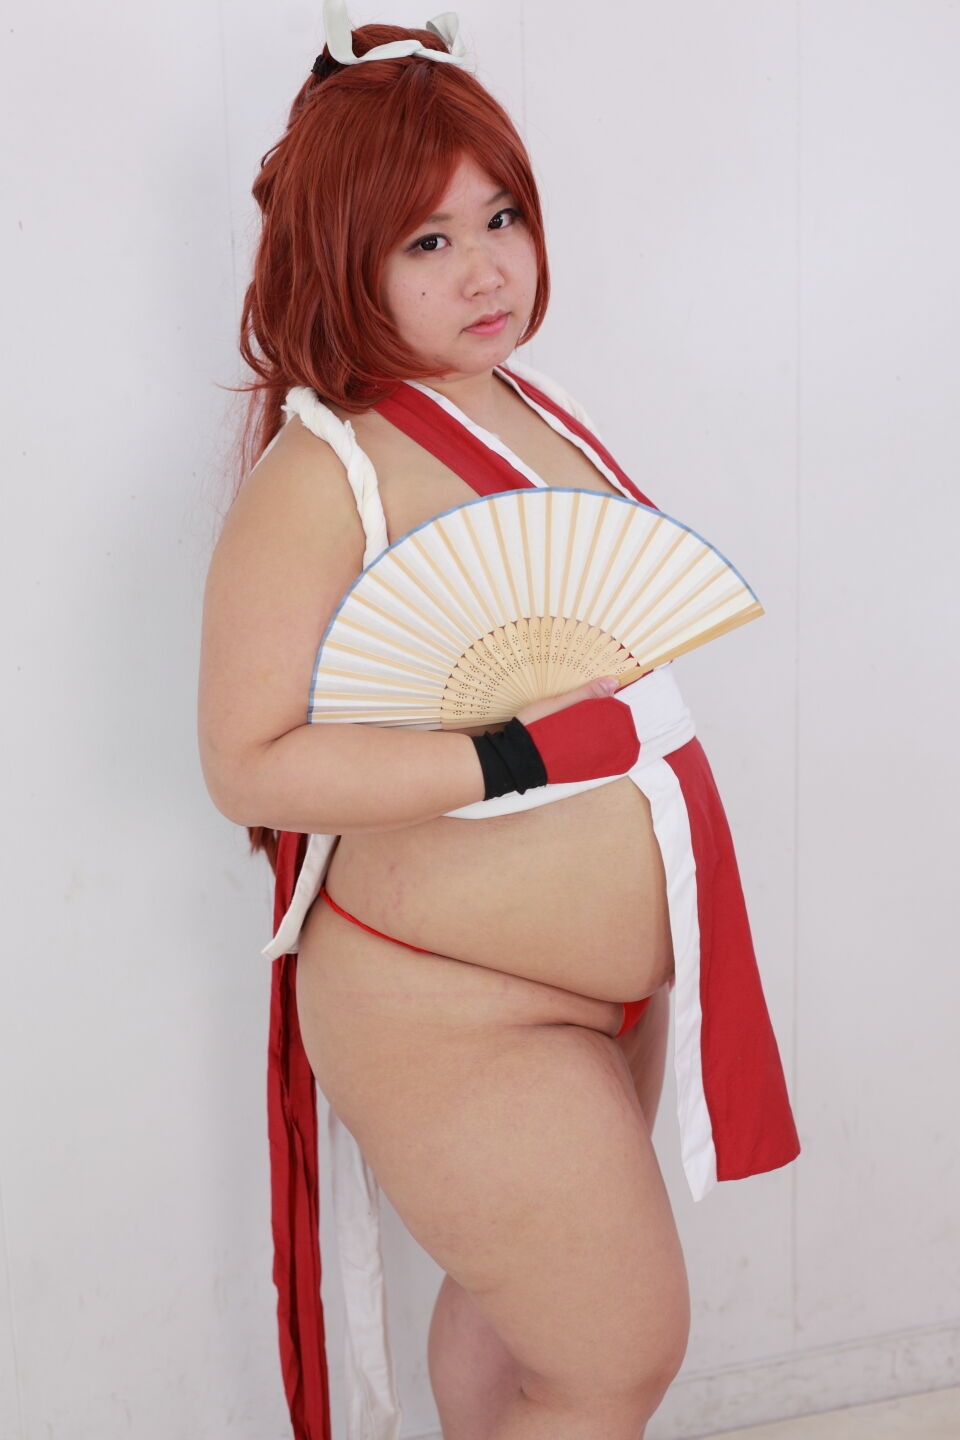 (渡辺さくらん) FIGHT FAT LADY (Sakuran Watanabe) (Mai Shiranui - Fatal Fury) (Chun-Li - Street Fighter) 118